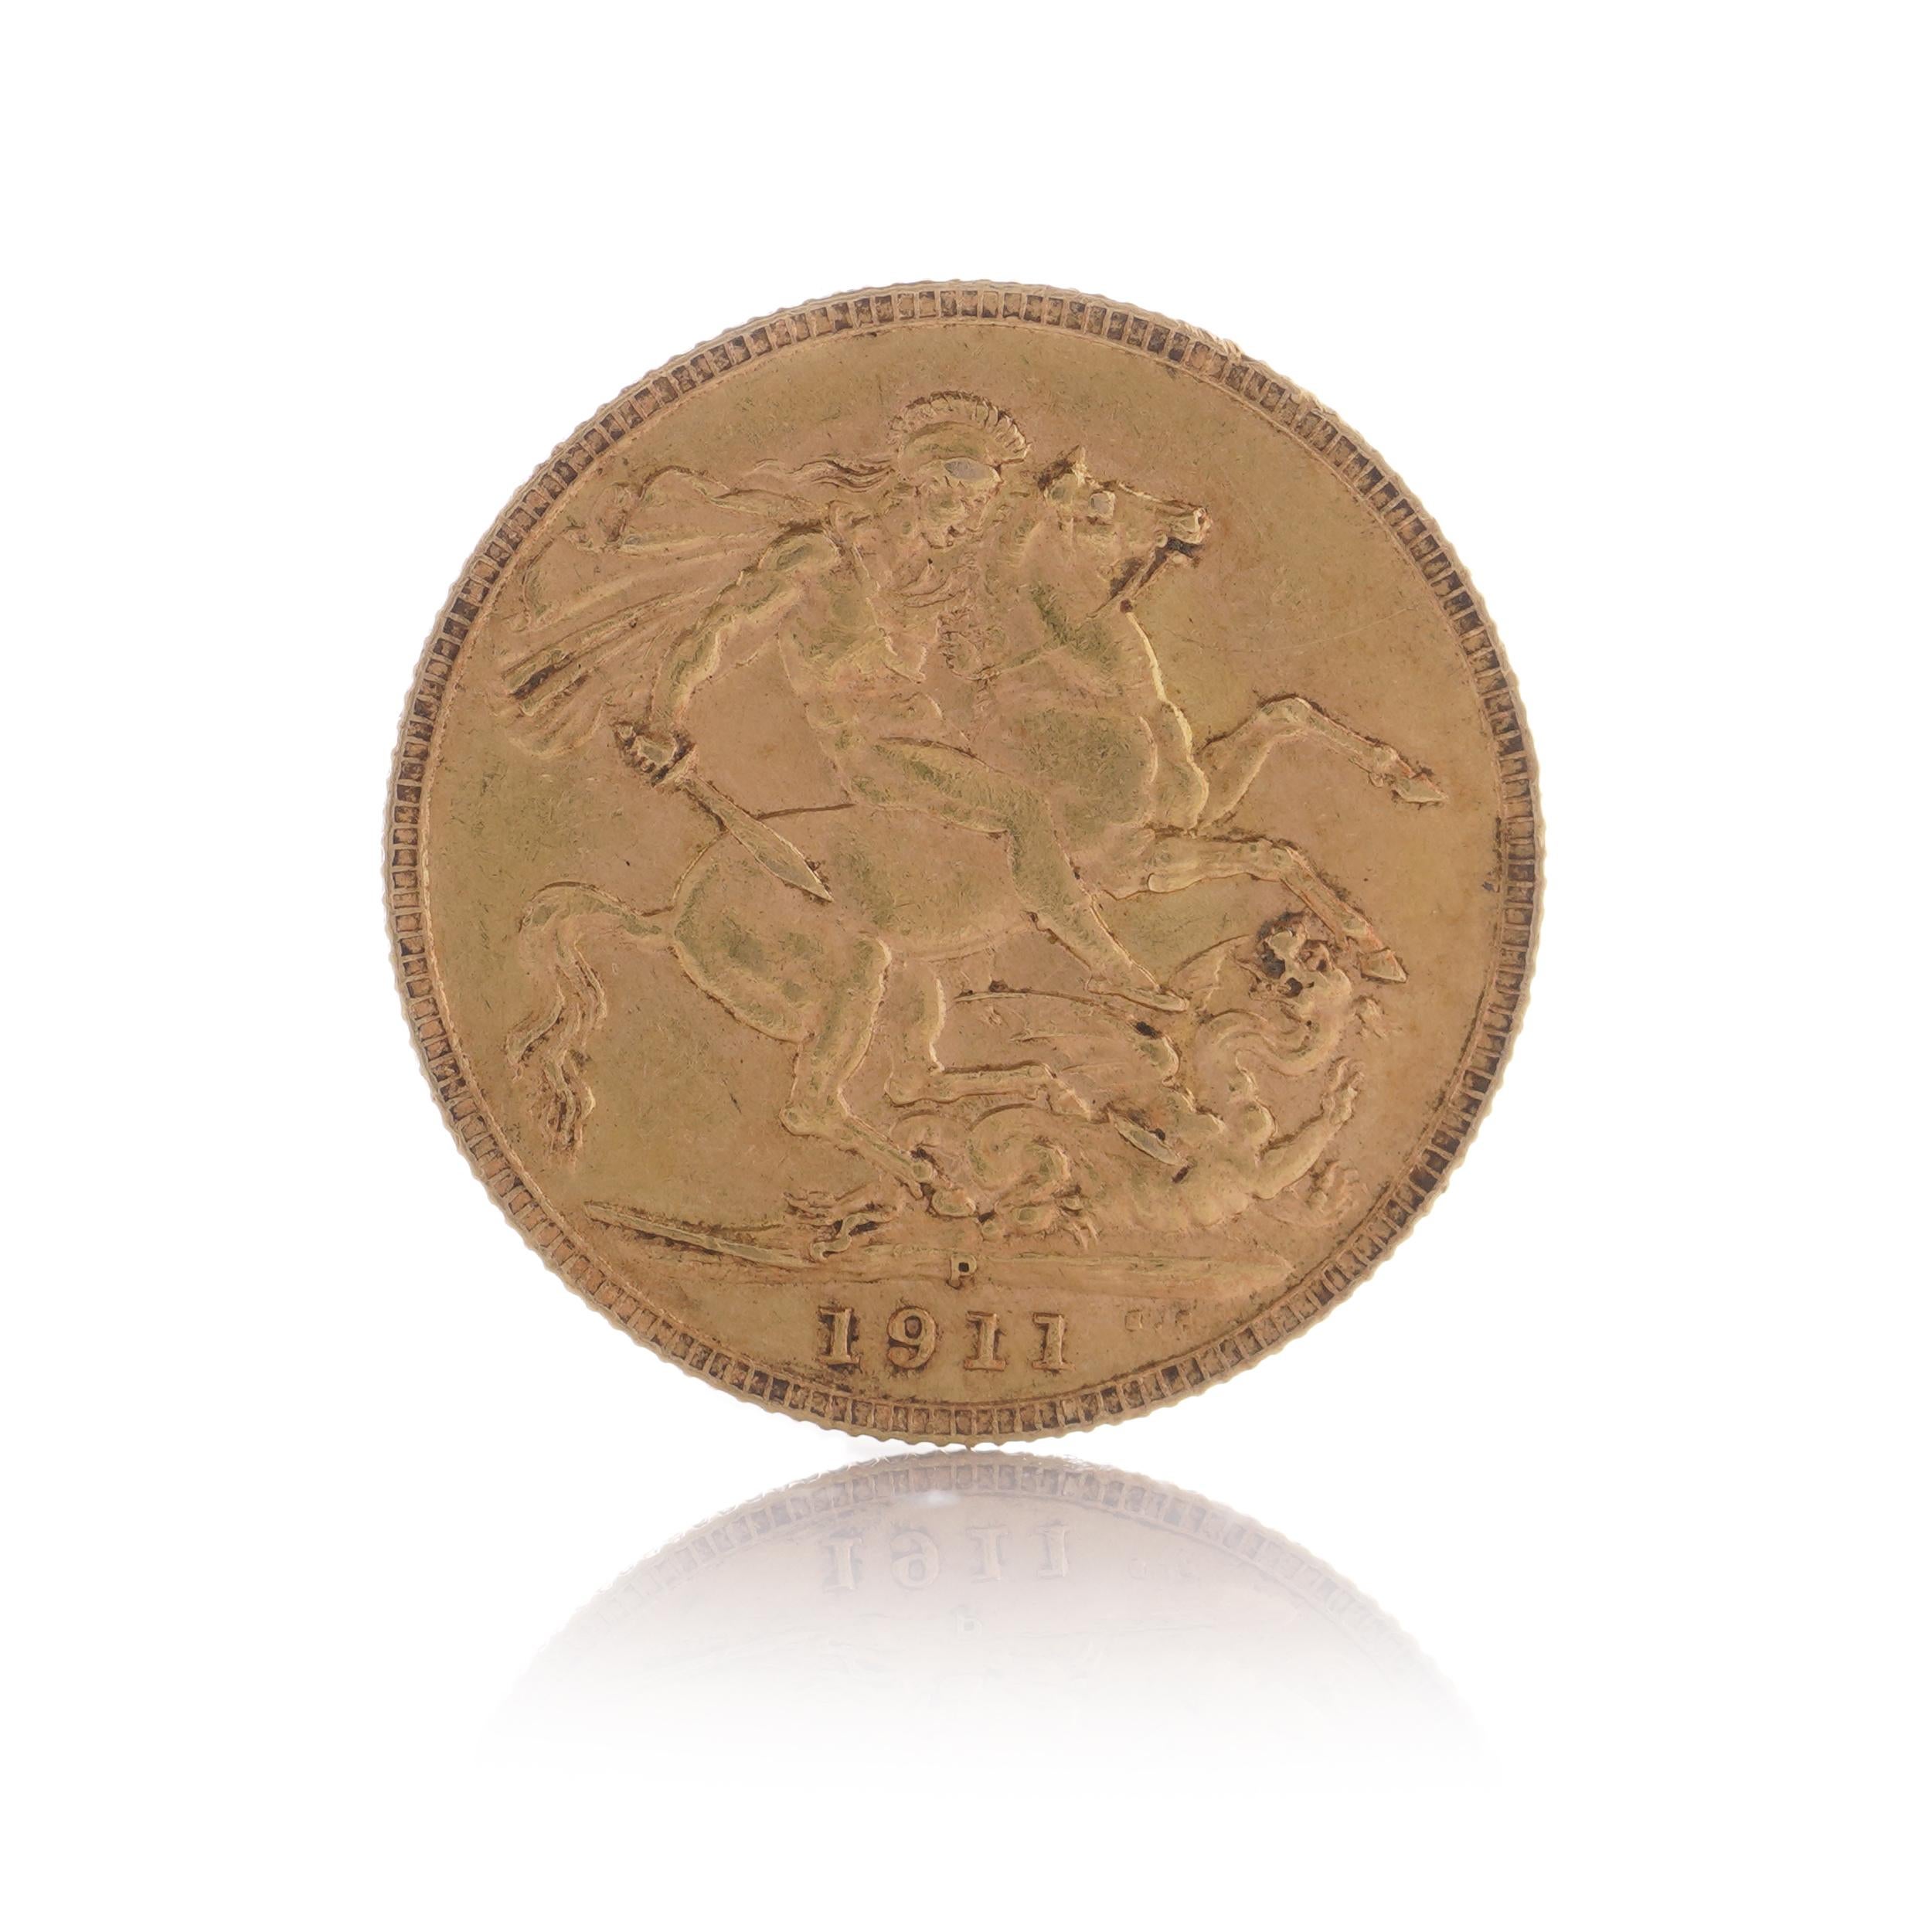 Eine Sovereign-Münze aus Gold aus dem Jahr 1911 mit dem Motiv von König Georg V. und dem klassischen Motiv von Georg und Drache. Diese Münze wird in einer Kunststoffkapsel geliefert. Das Fehlen des Münzzeichens weist darauf hin, dass die Münze in